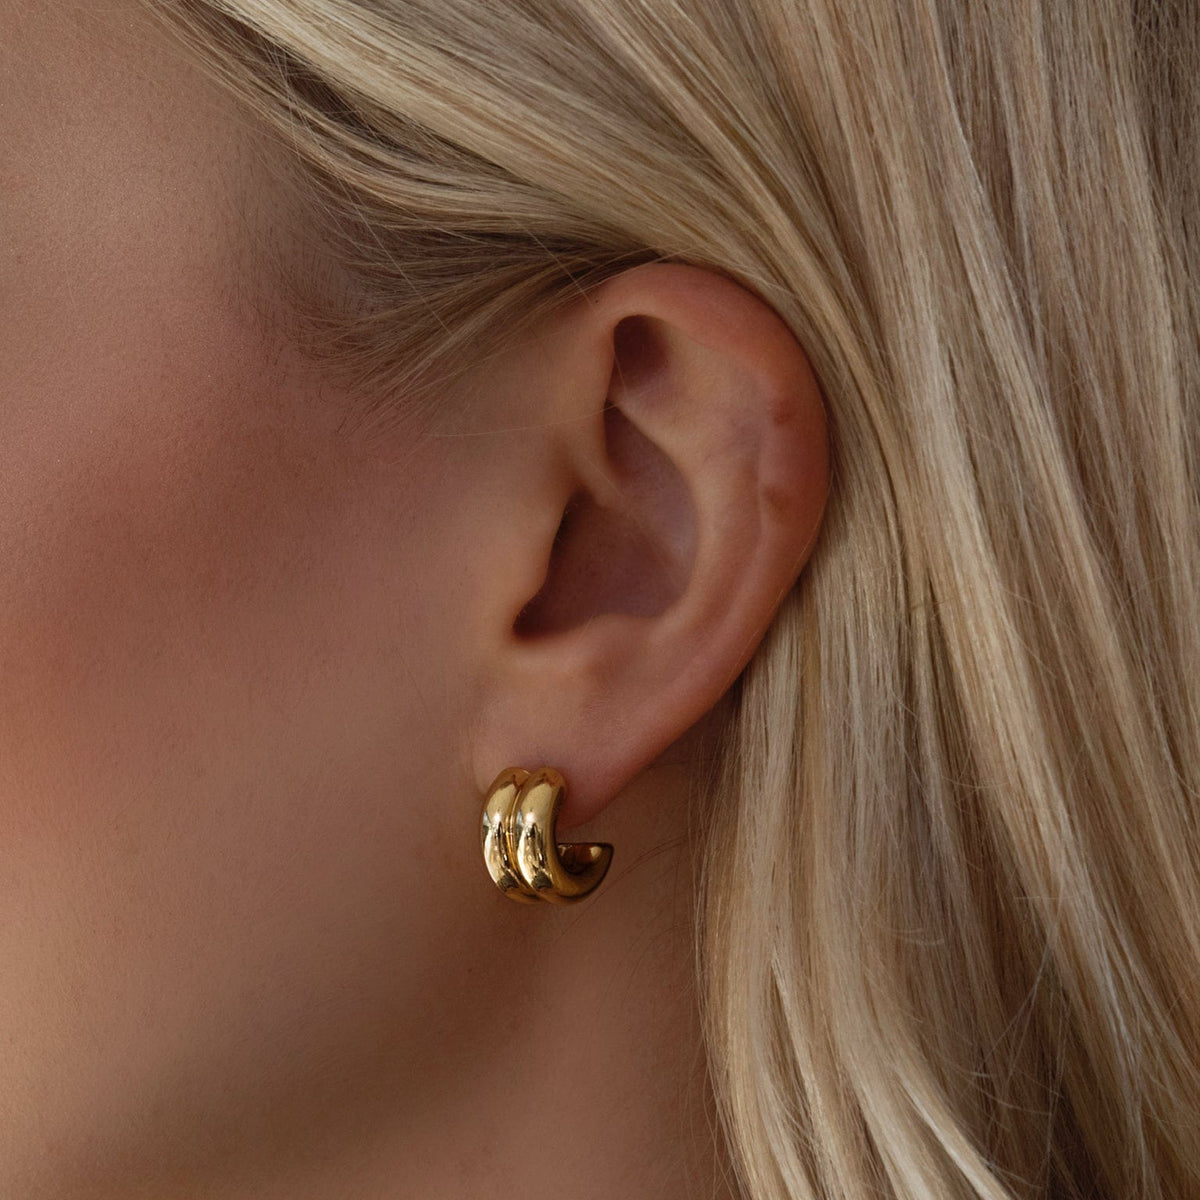 BOHOMOON Stainless Steel Juliana Hoop Earrings Gold